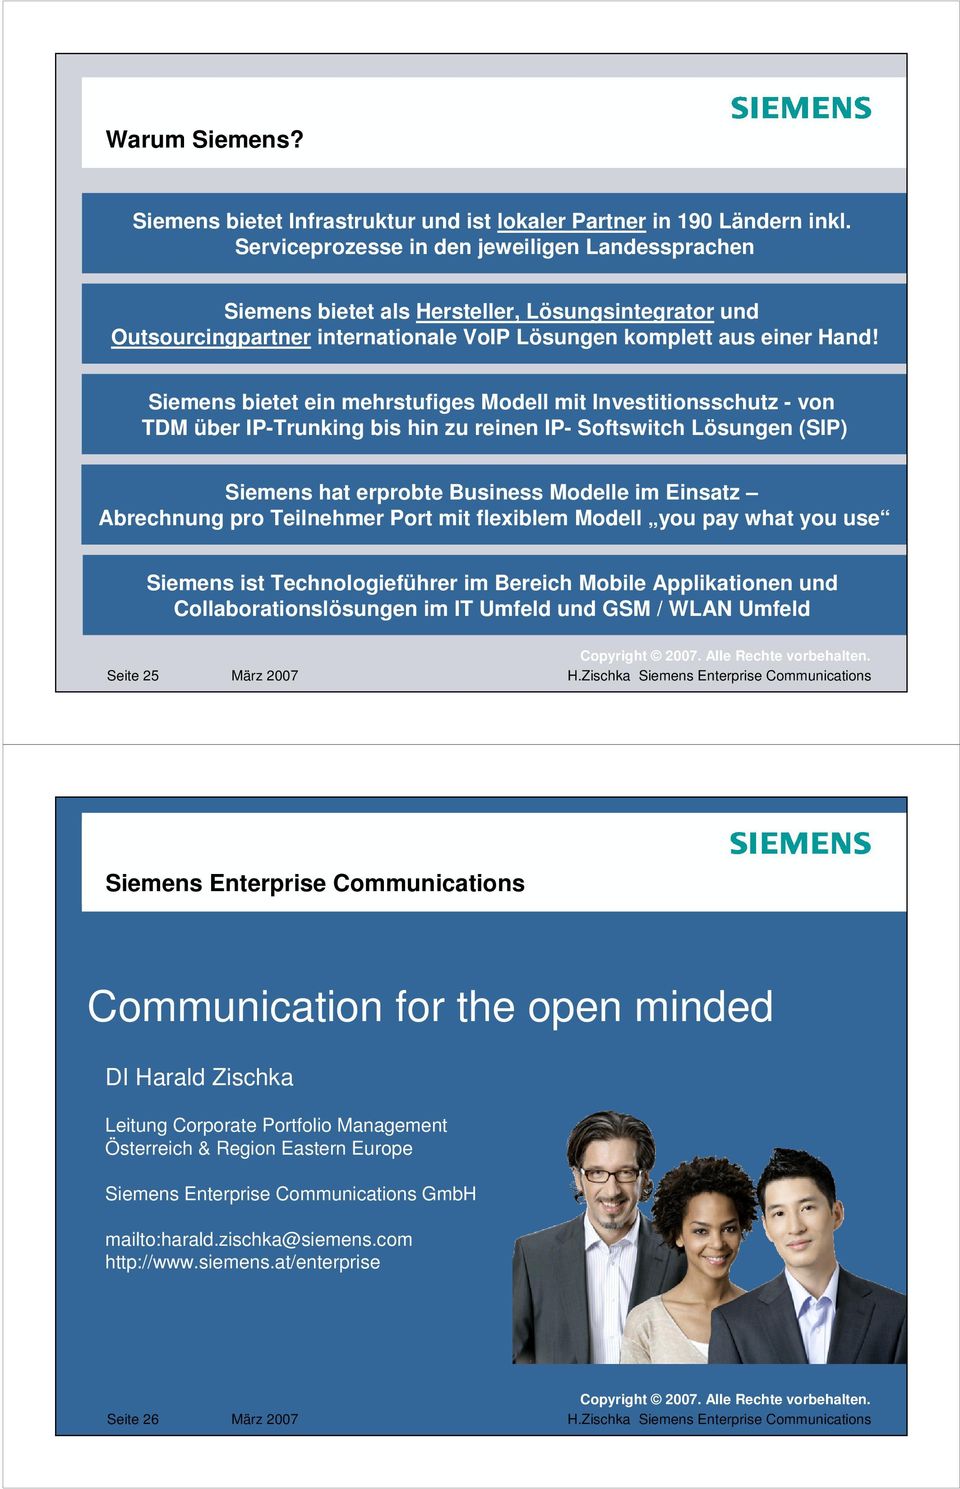 Siemens bietet ein mehrstufiges Modell mit Investitionsschutz - von TDM über IP-Trunking bis hin zu reinen IP- Softswitch Lösungen (SIP) Siemens hat erprobte Business Modelle im Einsatz Abrechnung